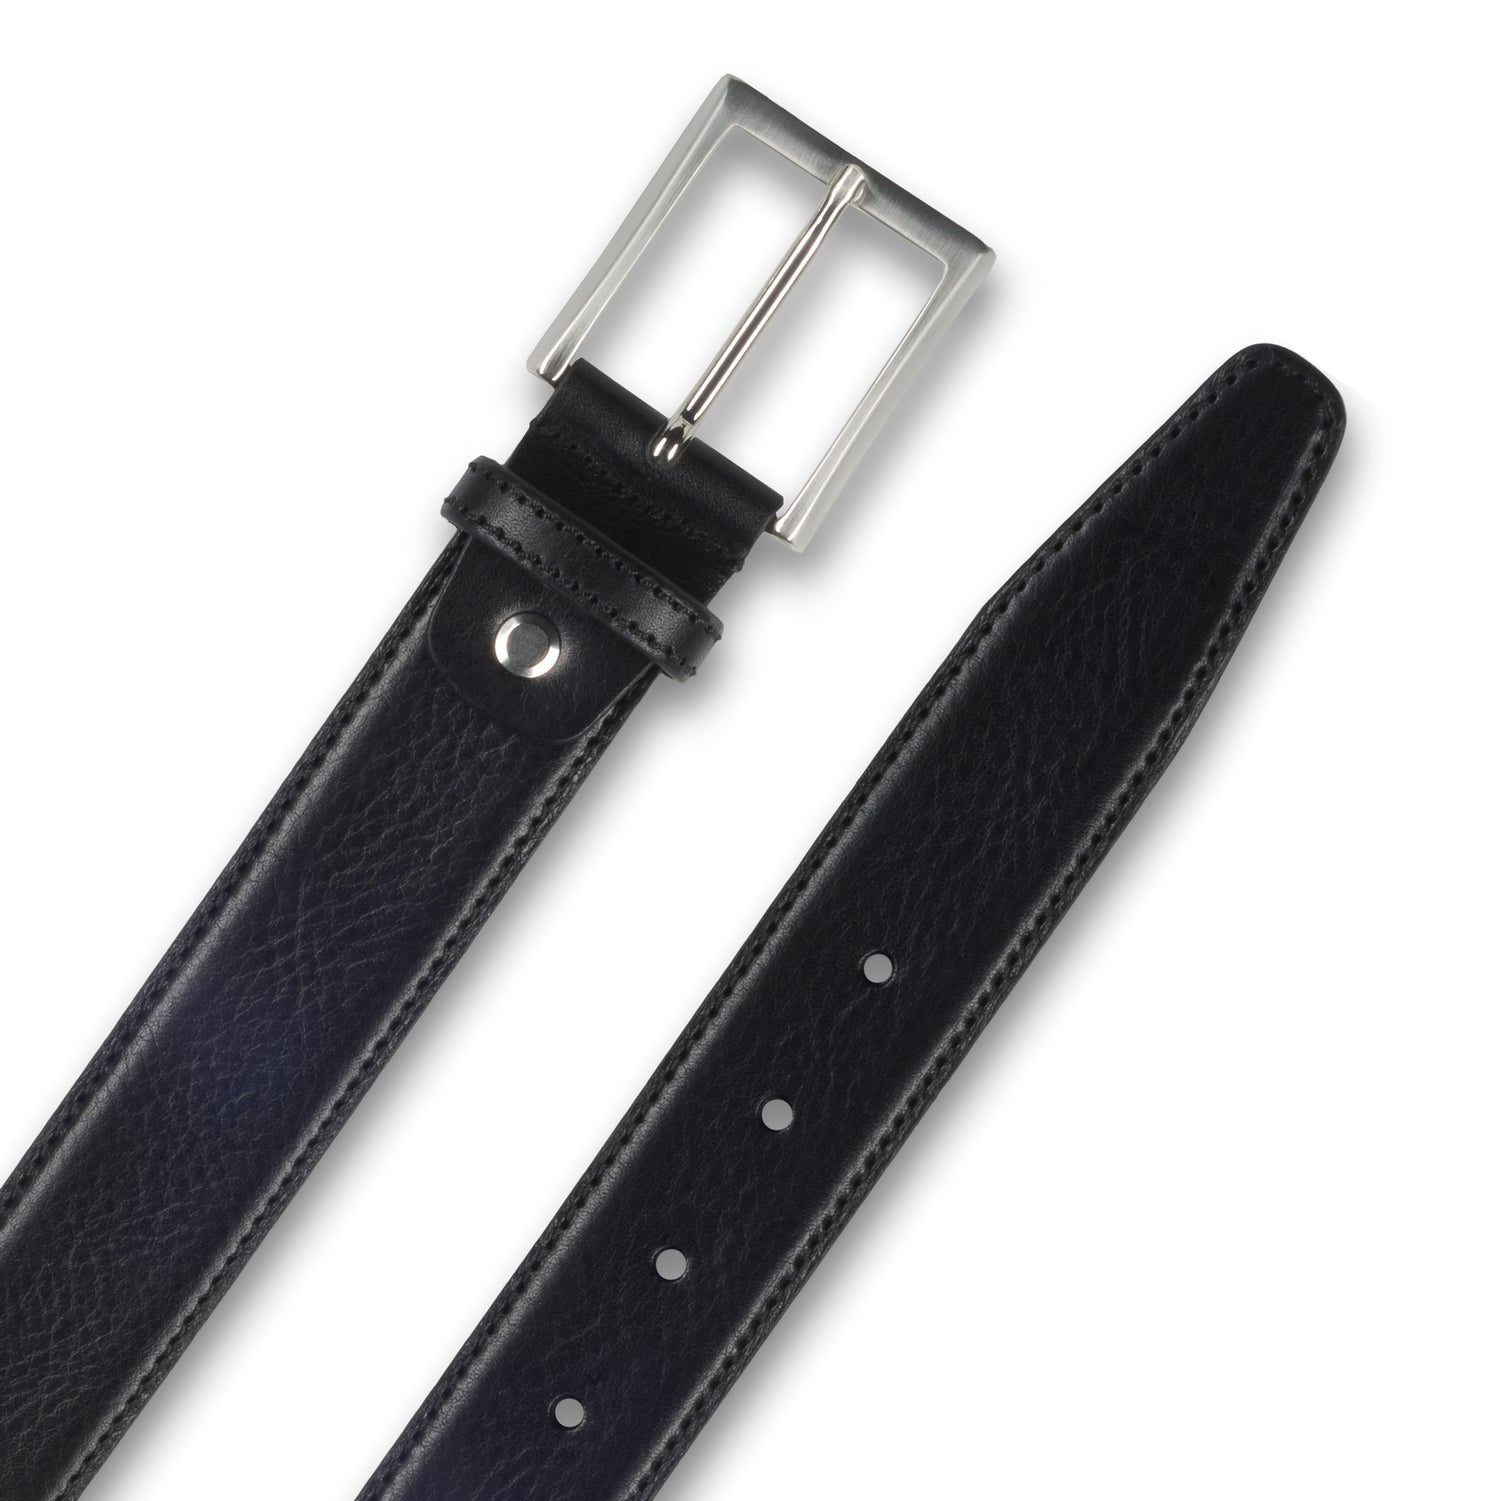 Ledergürtel / Anzuggürtel schwarz 3,5 cm breit